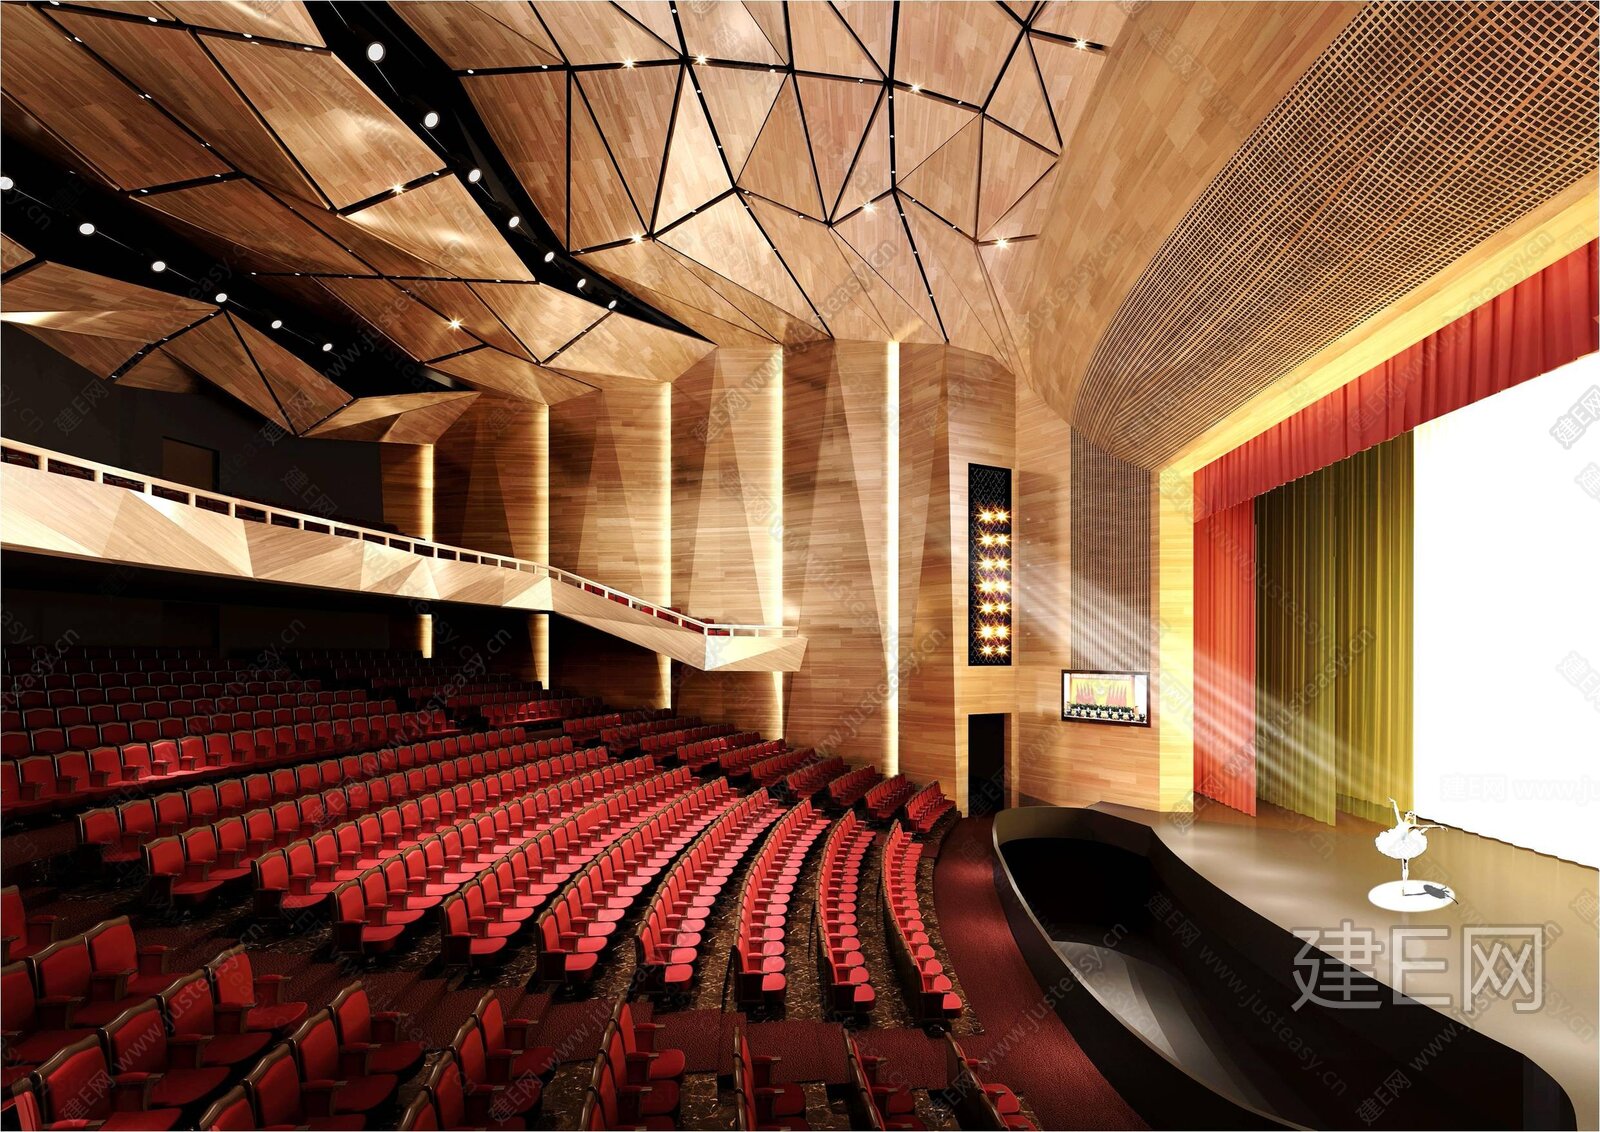 上海虹桥文化艺术中心 剧院丨效果图 剧院改造方案 施工图 软装清单